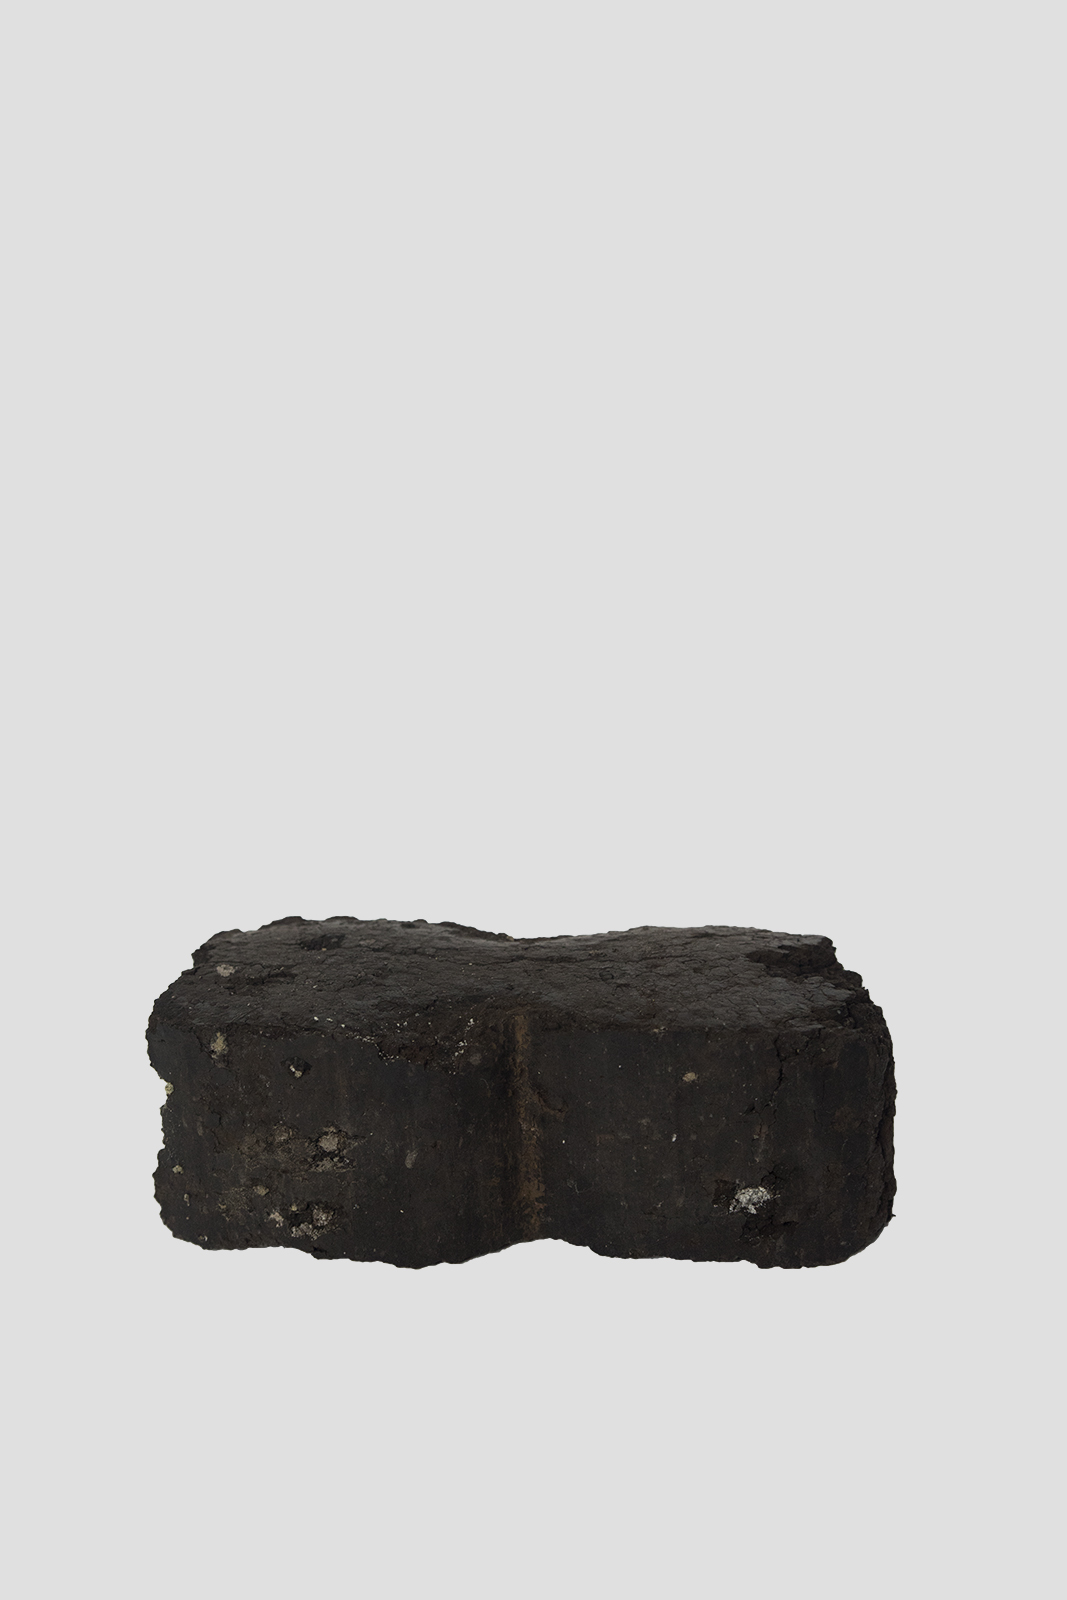 Буре вугілля, виробниче об’єднання «Олександріявугілля»/ Brown coal, Oleksandriavuhillia